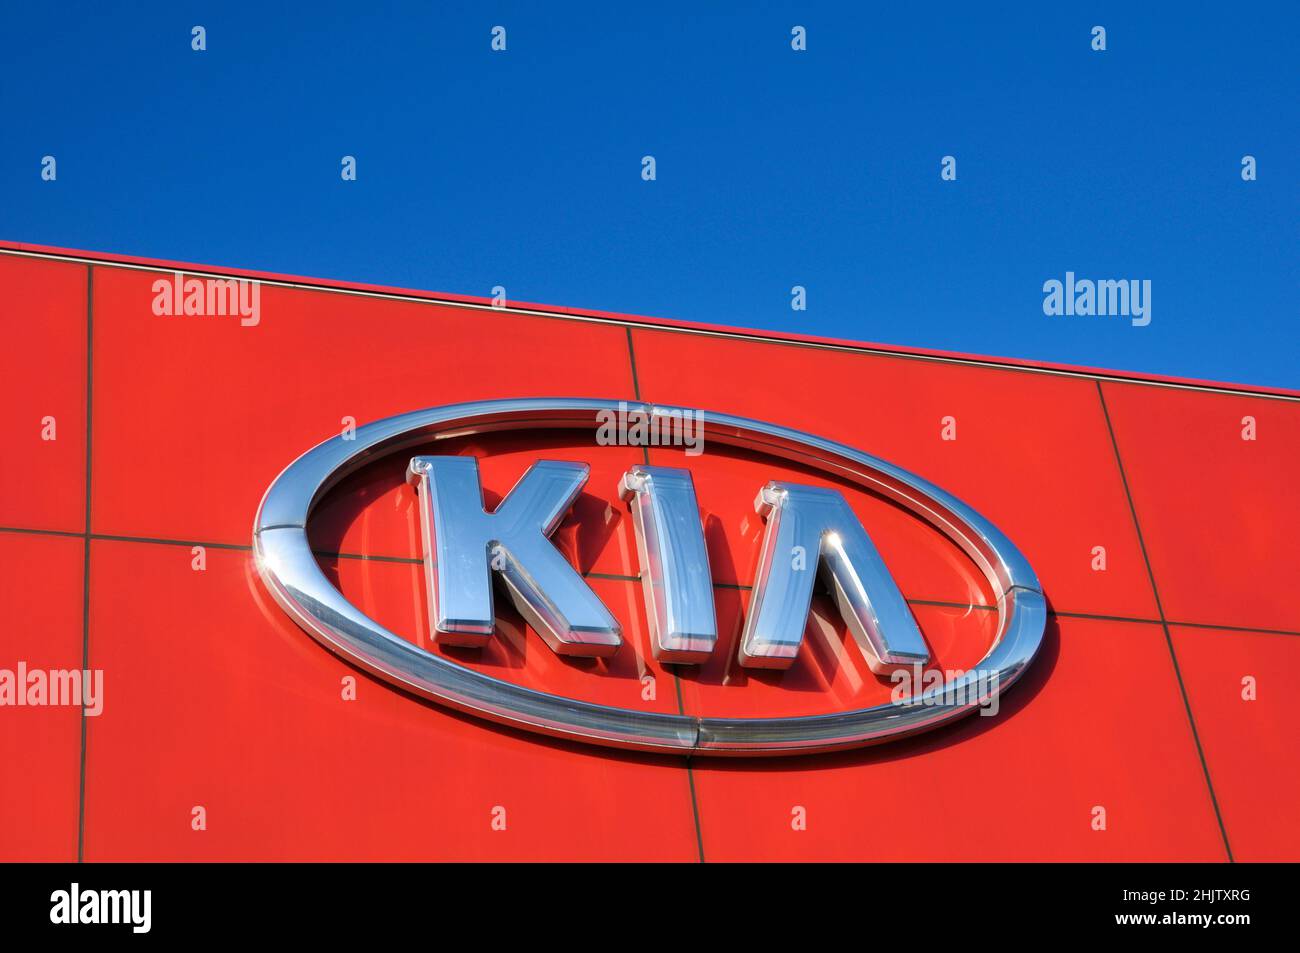 Le logo de la marque KIA Motors est apposé à un concessionnaire automobile contre un ciel bleu. Banque D'Images